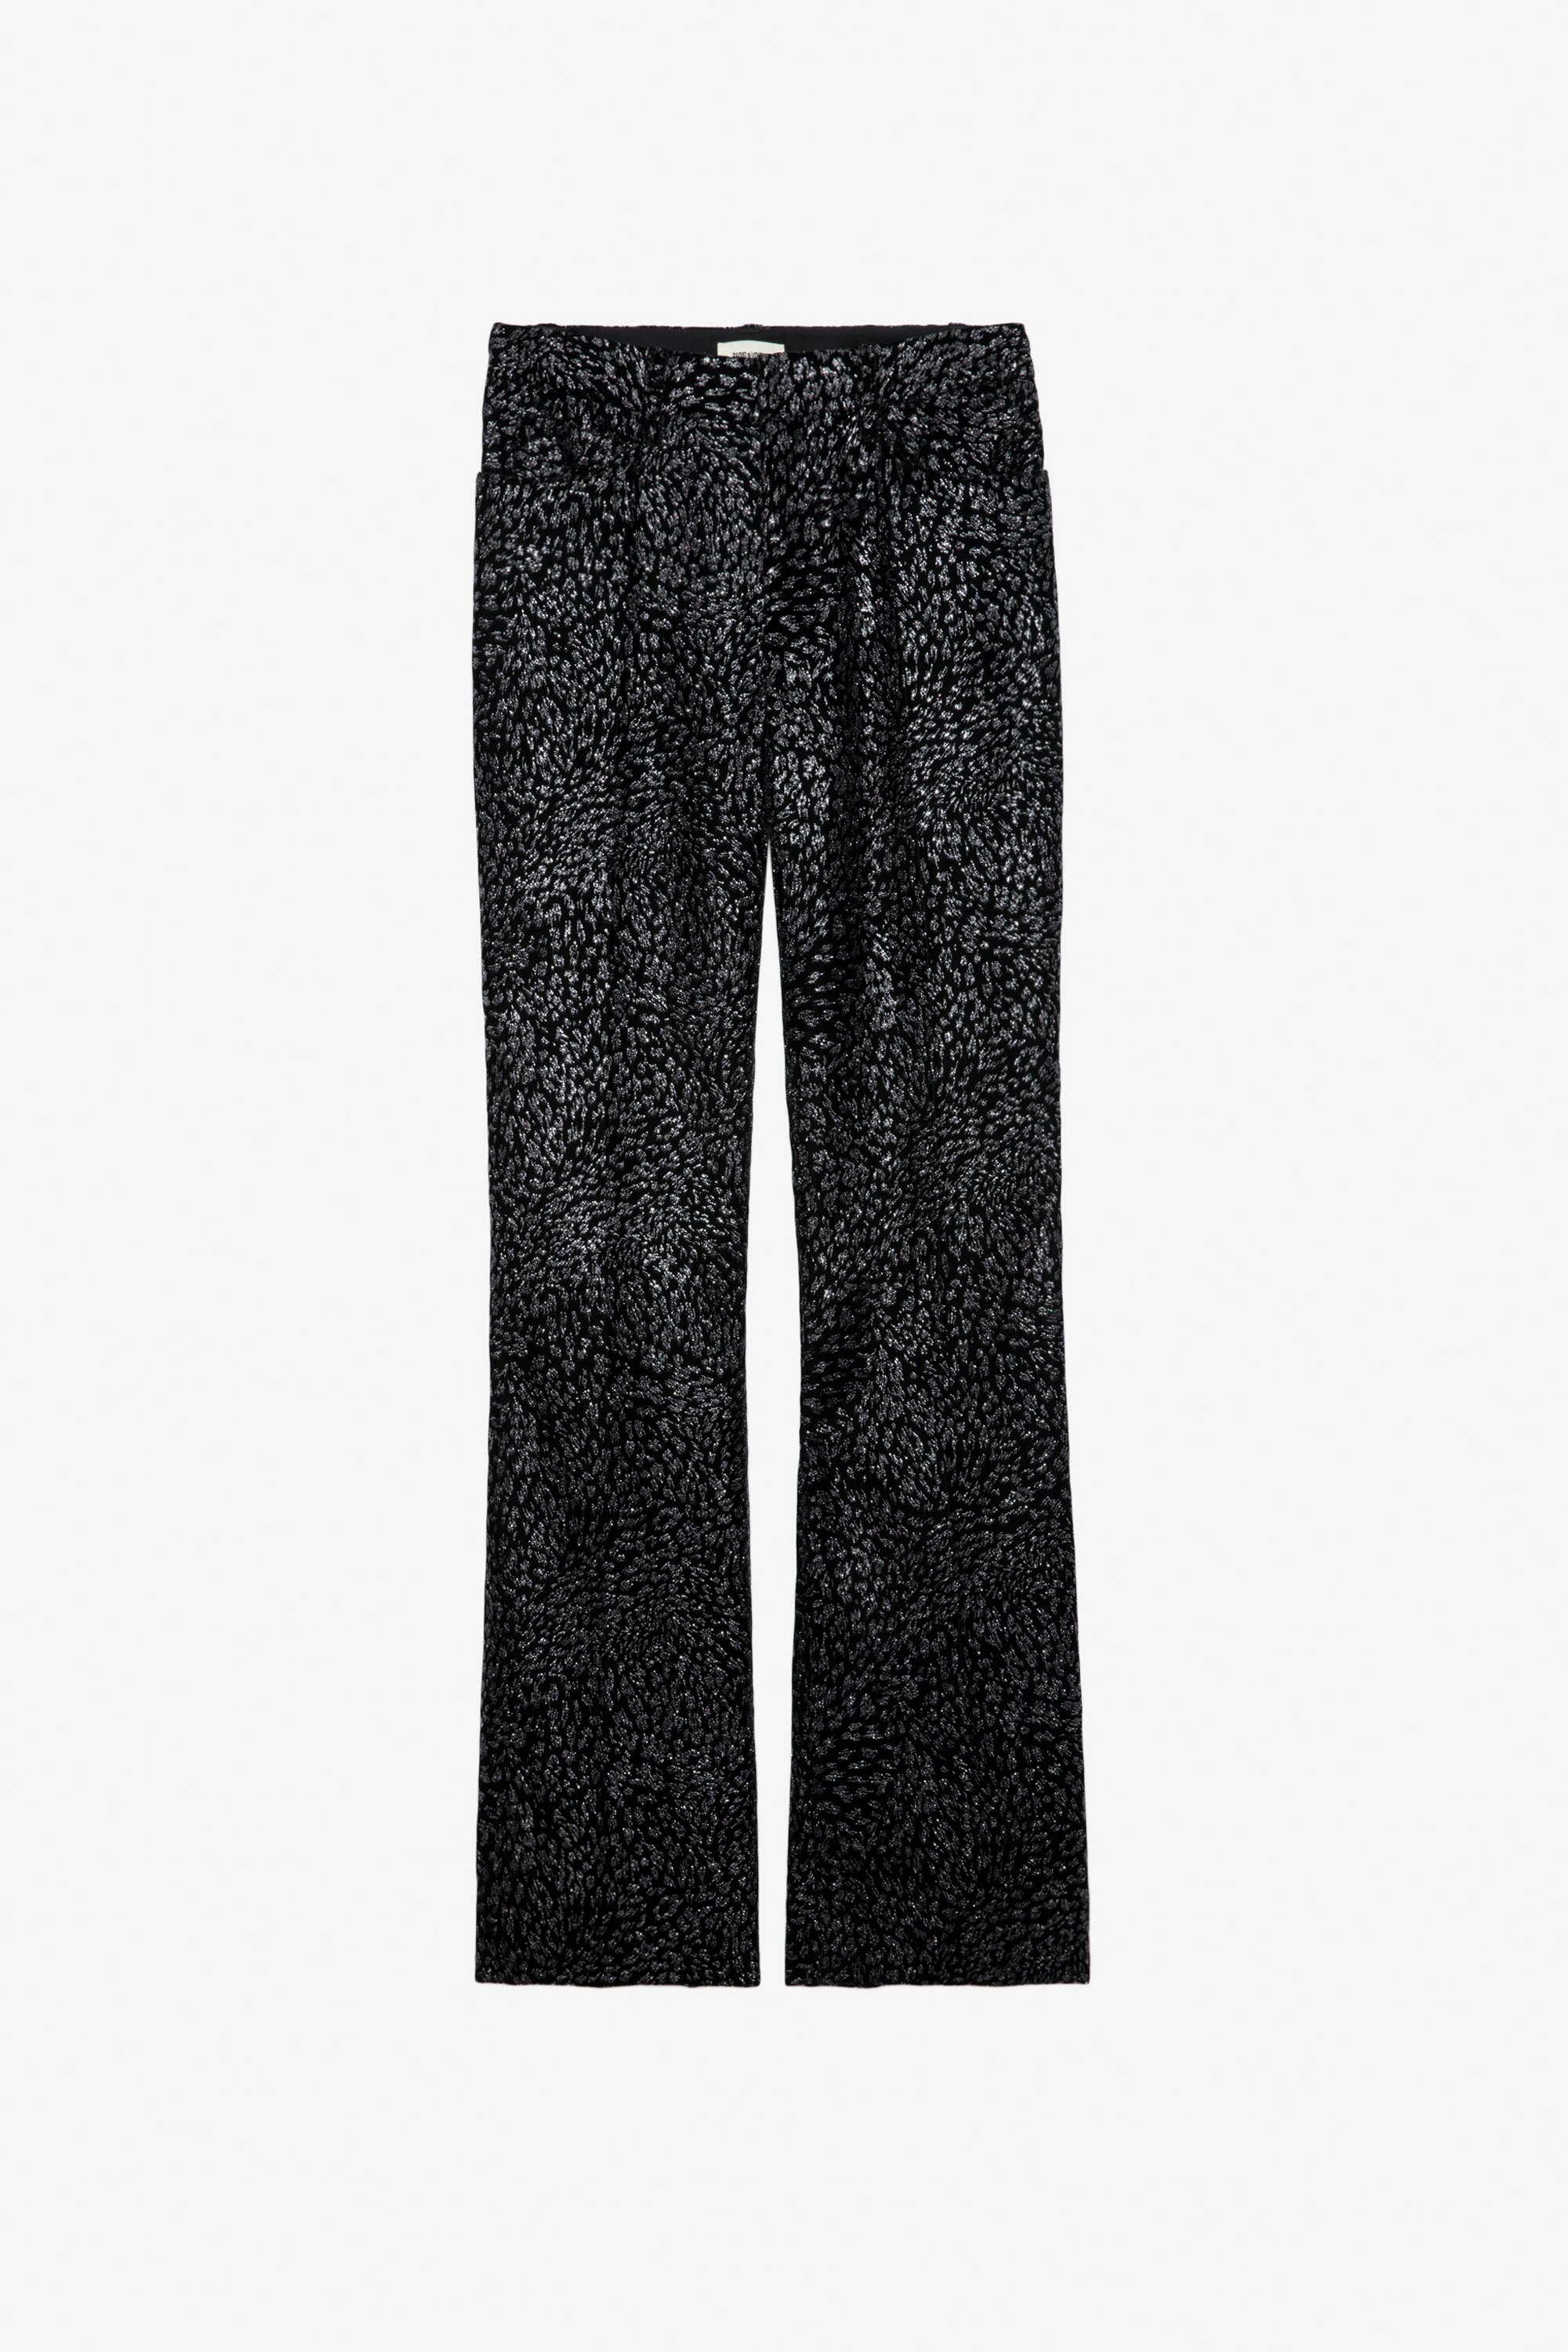 Hose Piston Samt Glitter - Anzughose aus schwarzem Samt mit Pailletten mit Leopardenmotiv.